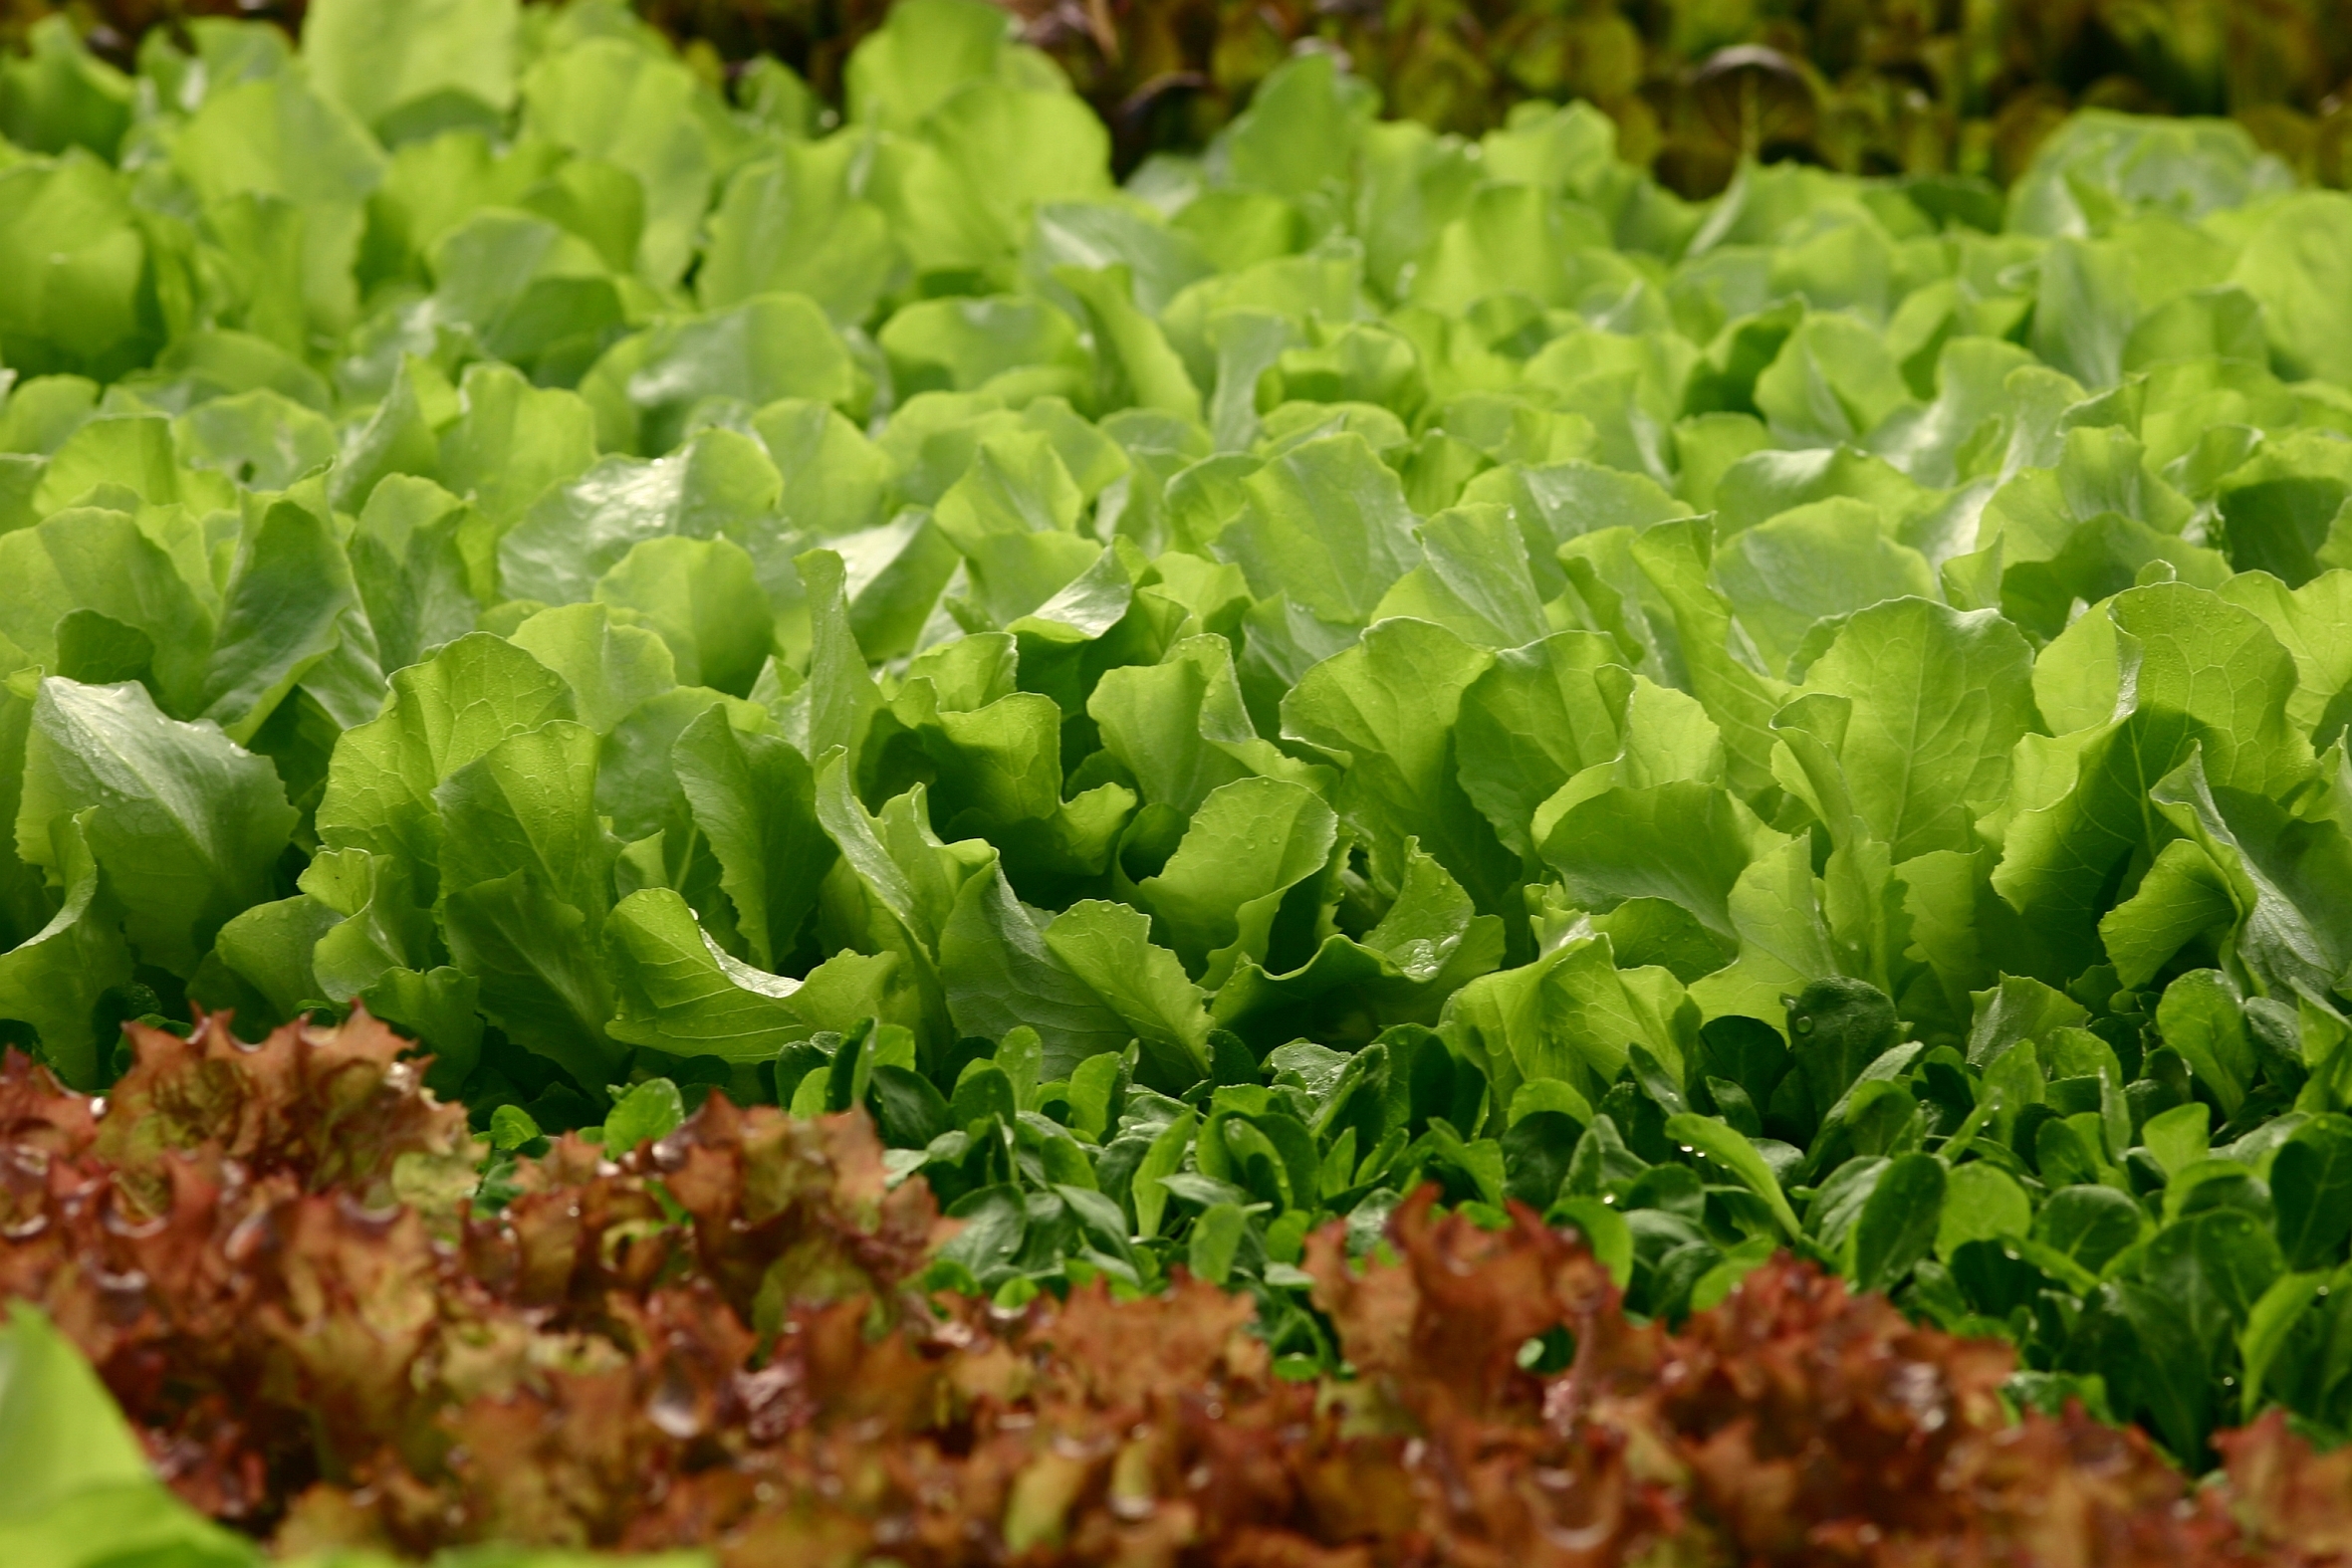 Regionale Erzeugung: Feldsalat hat jetzt Saison